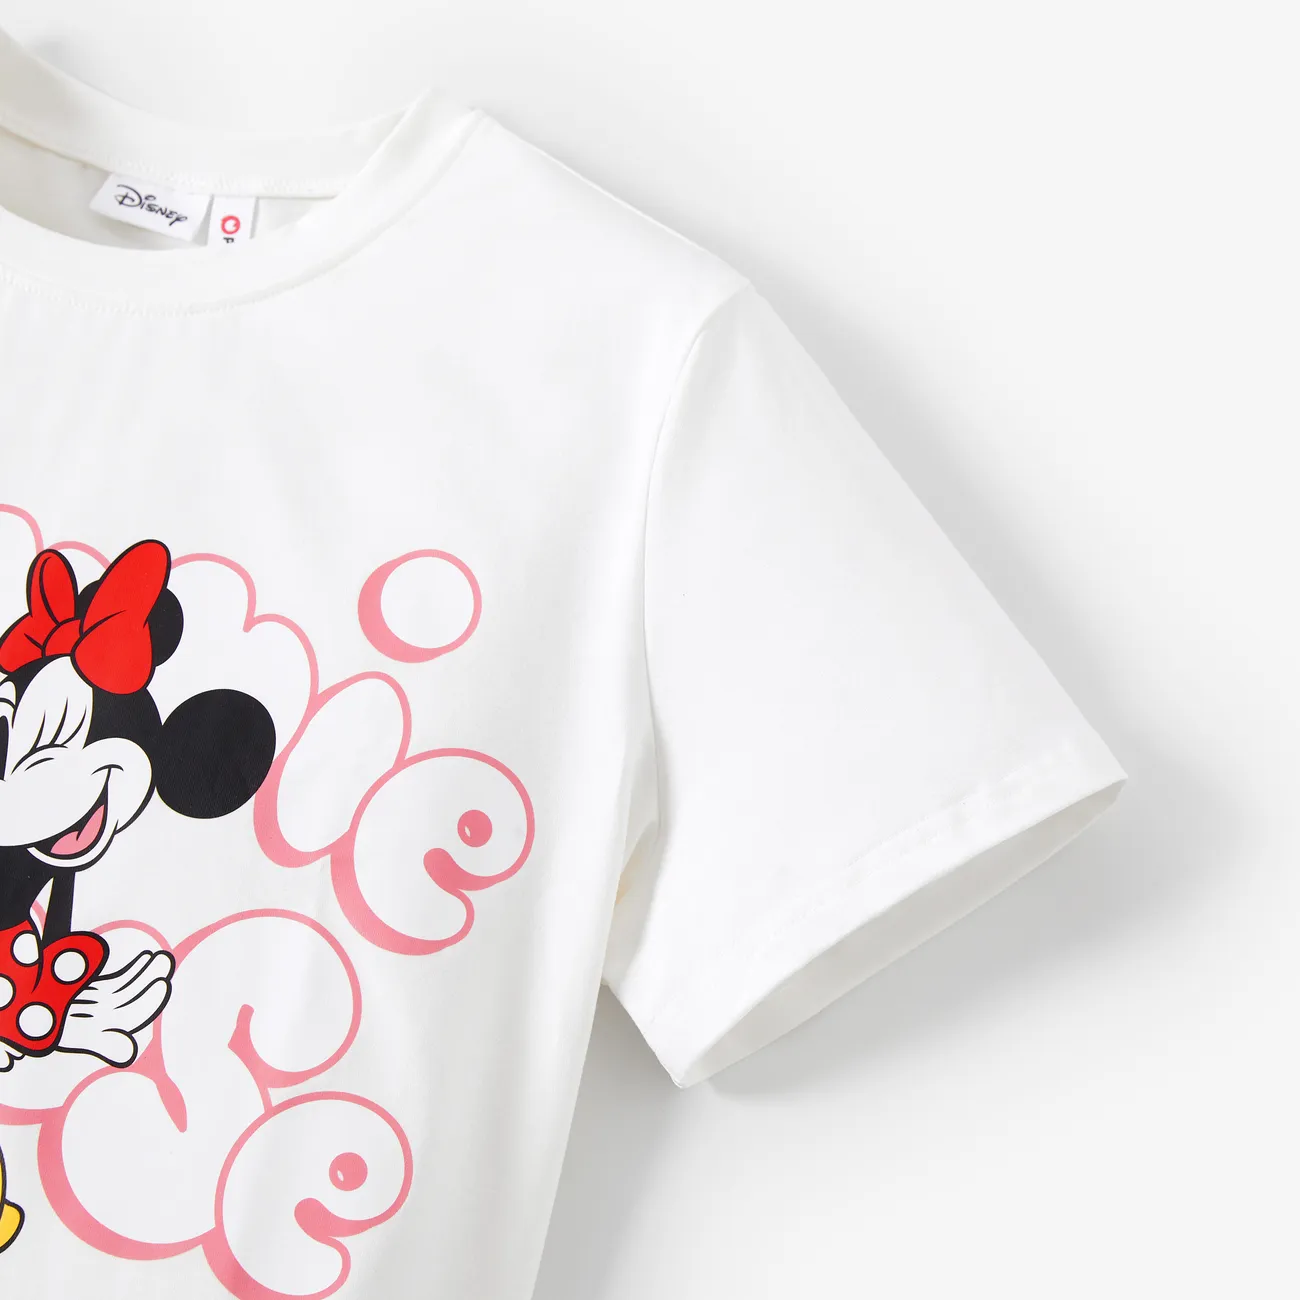 Disney Mickey and Friends Look de família Dia da Mãe Manga curta Conjuntos de roupa para a família Tops off white big image 1